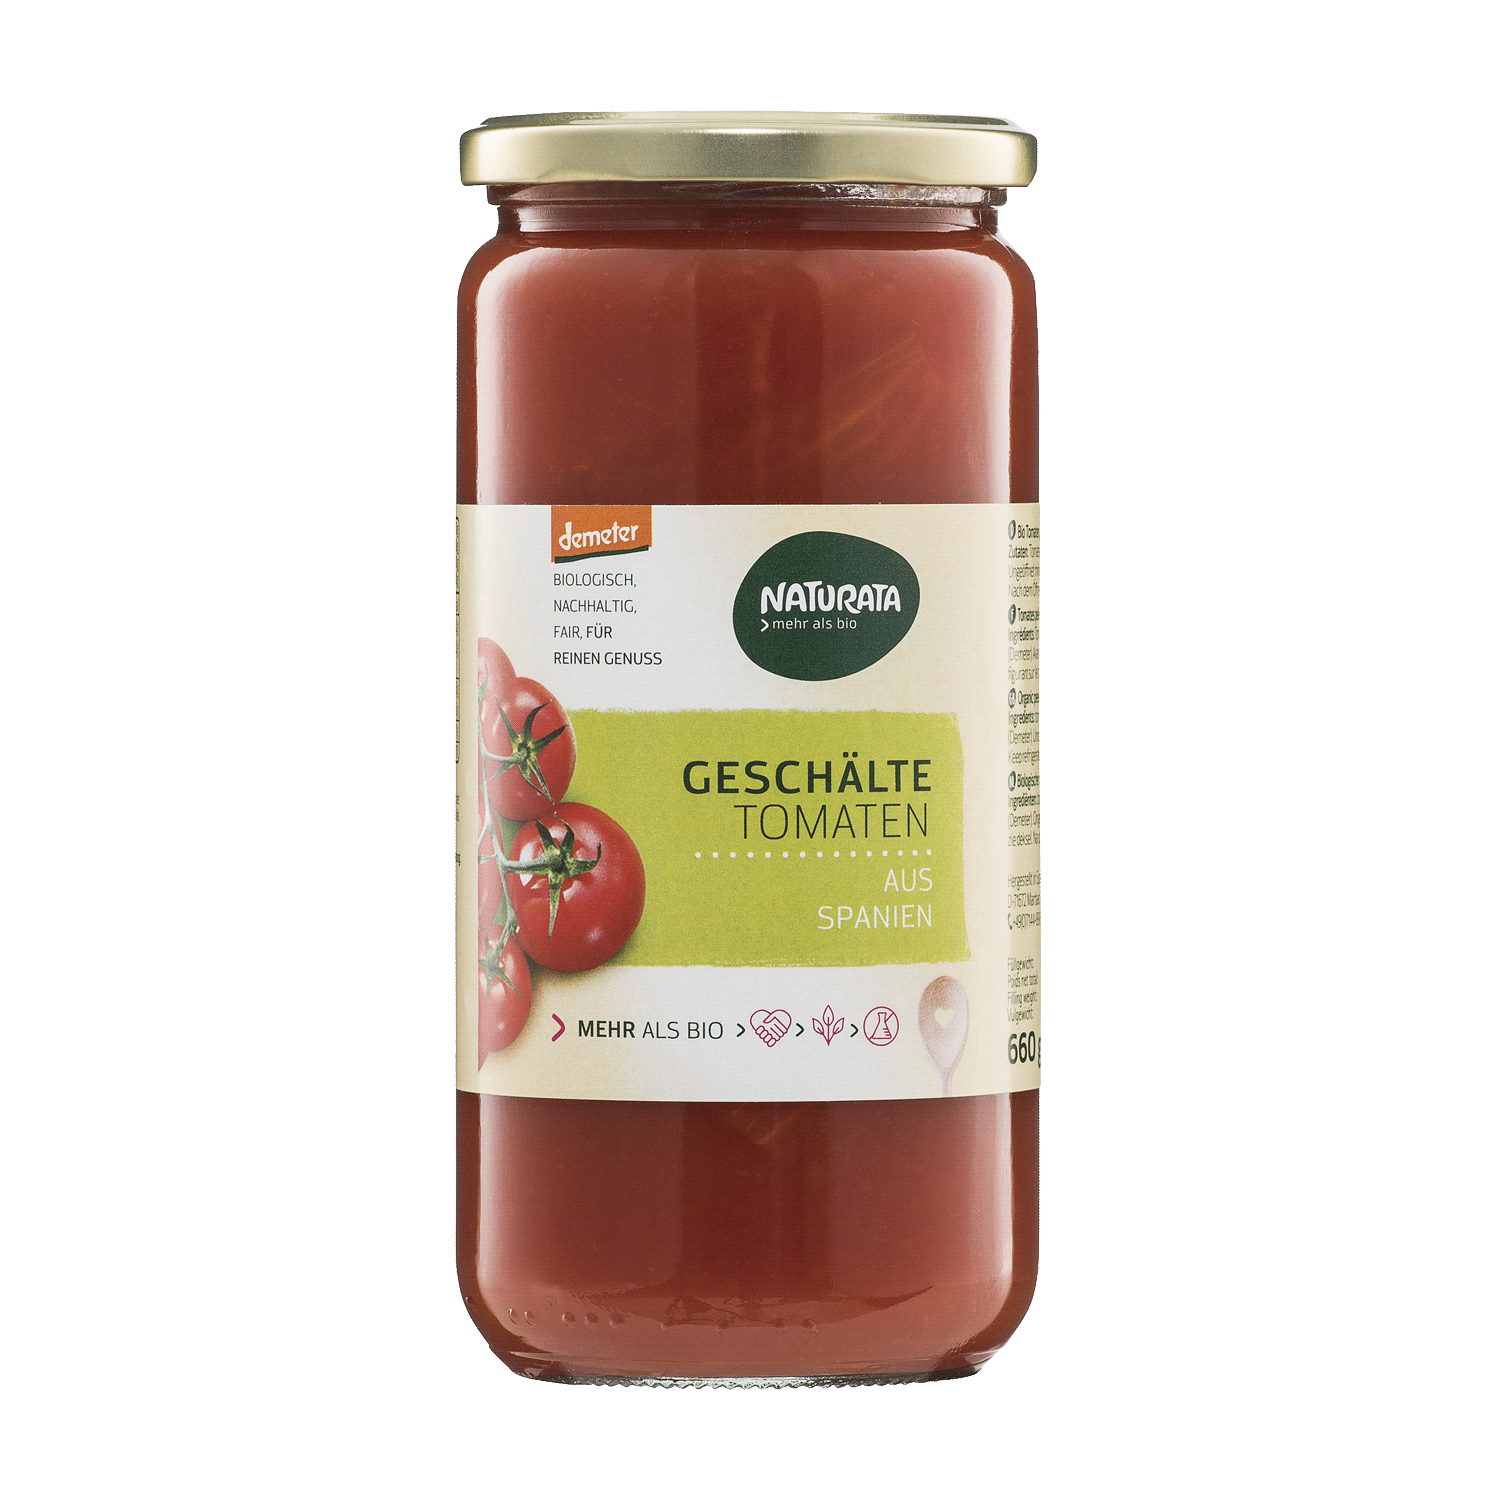 Geschälte Tomaten in Tomatensaft, 660 g